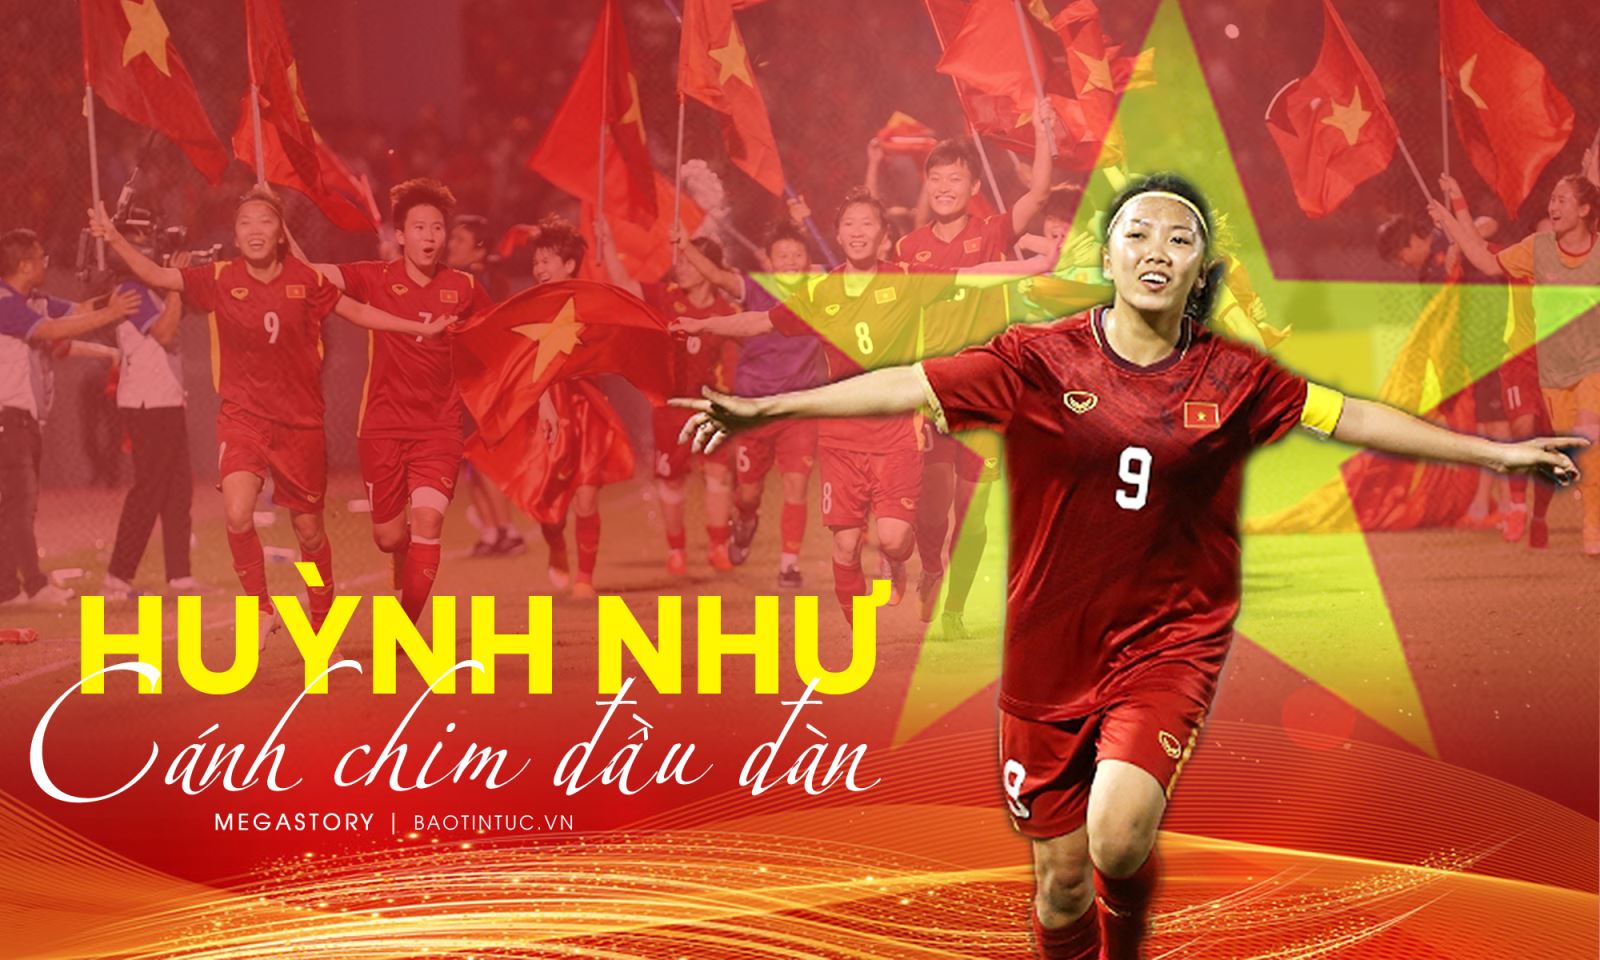 Cầu thủ Huỳnh Như – biểu tượng hùng hậu của bóng đá nữ Việt Nam, với những kỹ năng điêu luyện và tâm huyết dành cho đội tuyển. Hãy cùng xem lại những khoảnh khắc đẹp nhất của cô ấy trong các trận đấu để cảm nhận được sức mạnh và bản lĩnh trong đôi chân của người phụ nữ Việt Nam.